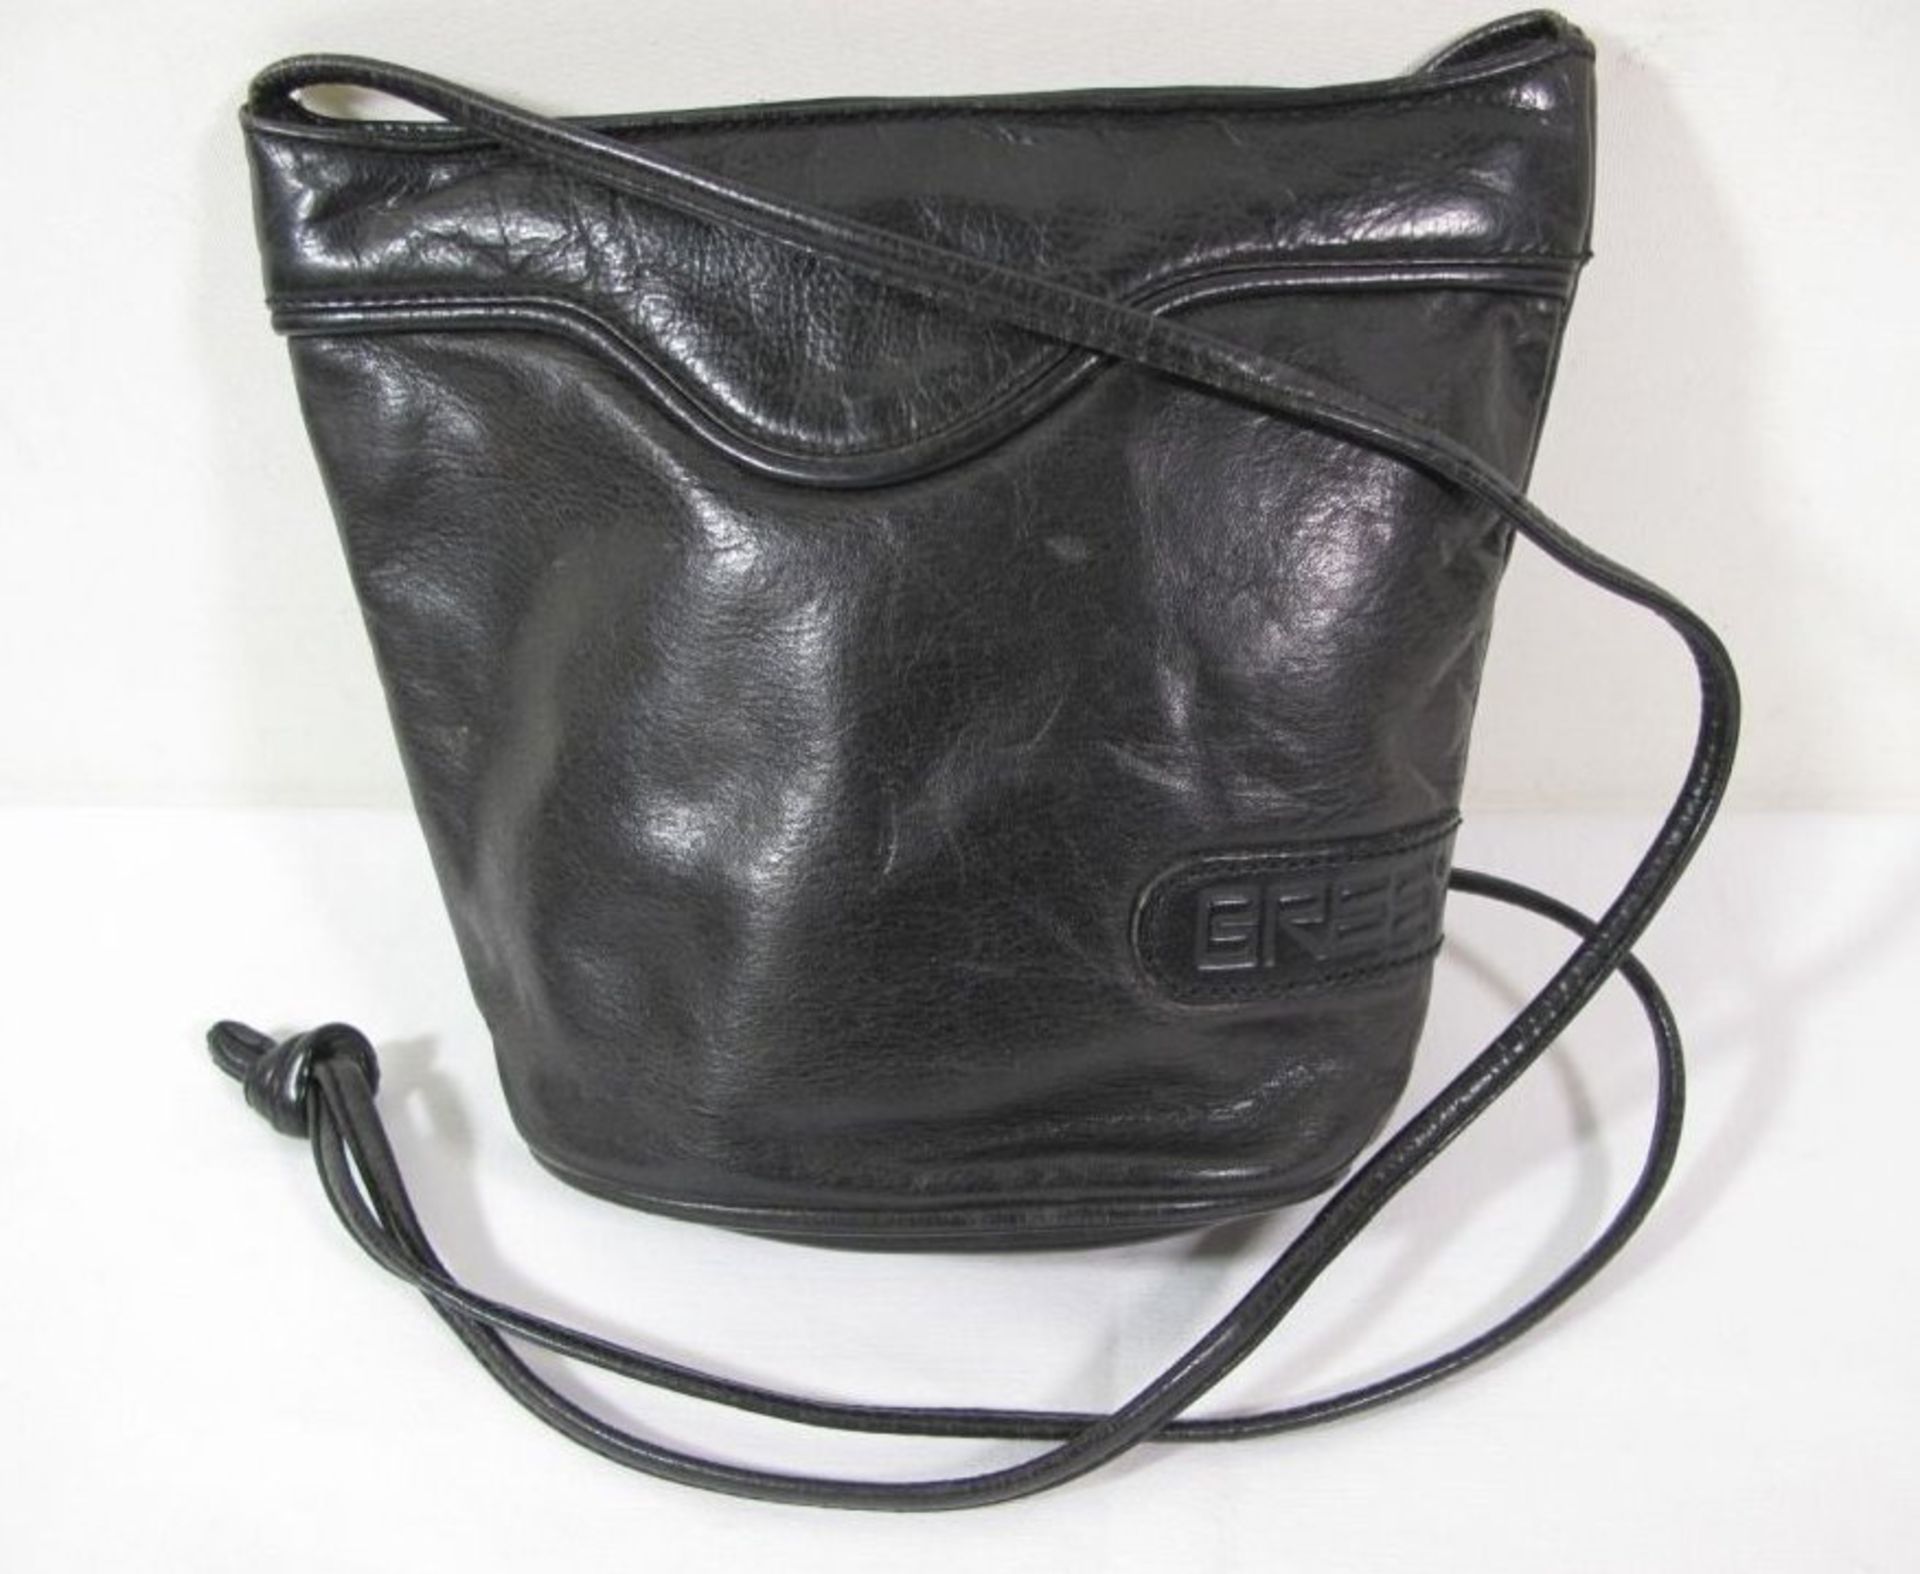 Damenhandtasche, BREE, schwarzes Leder, leichte Tragespuren, H-18cm B-22cm.